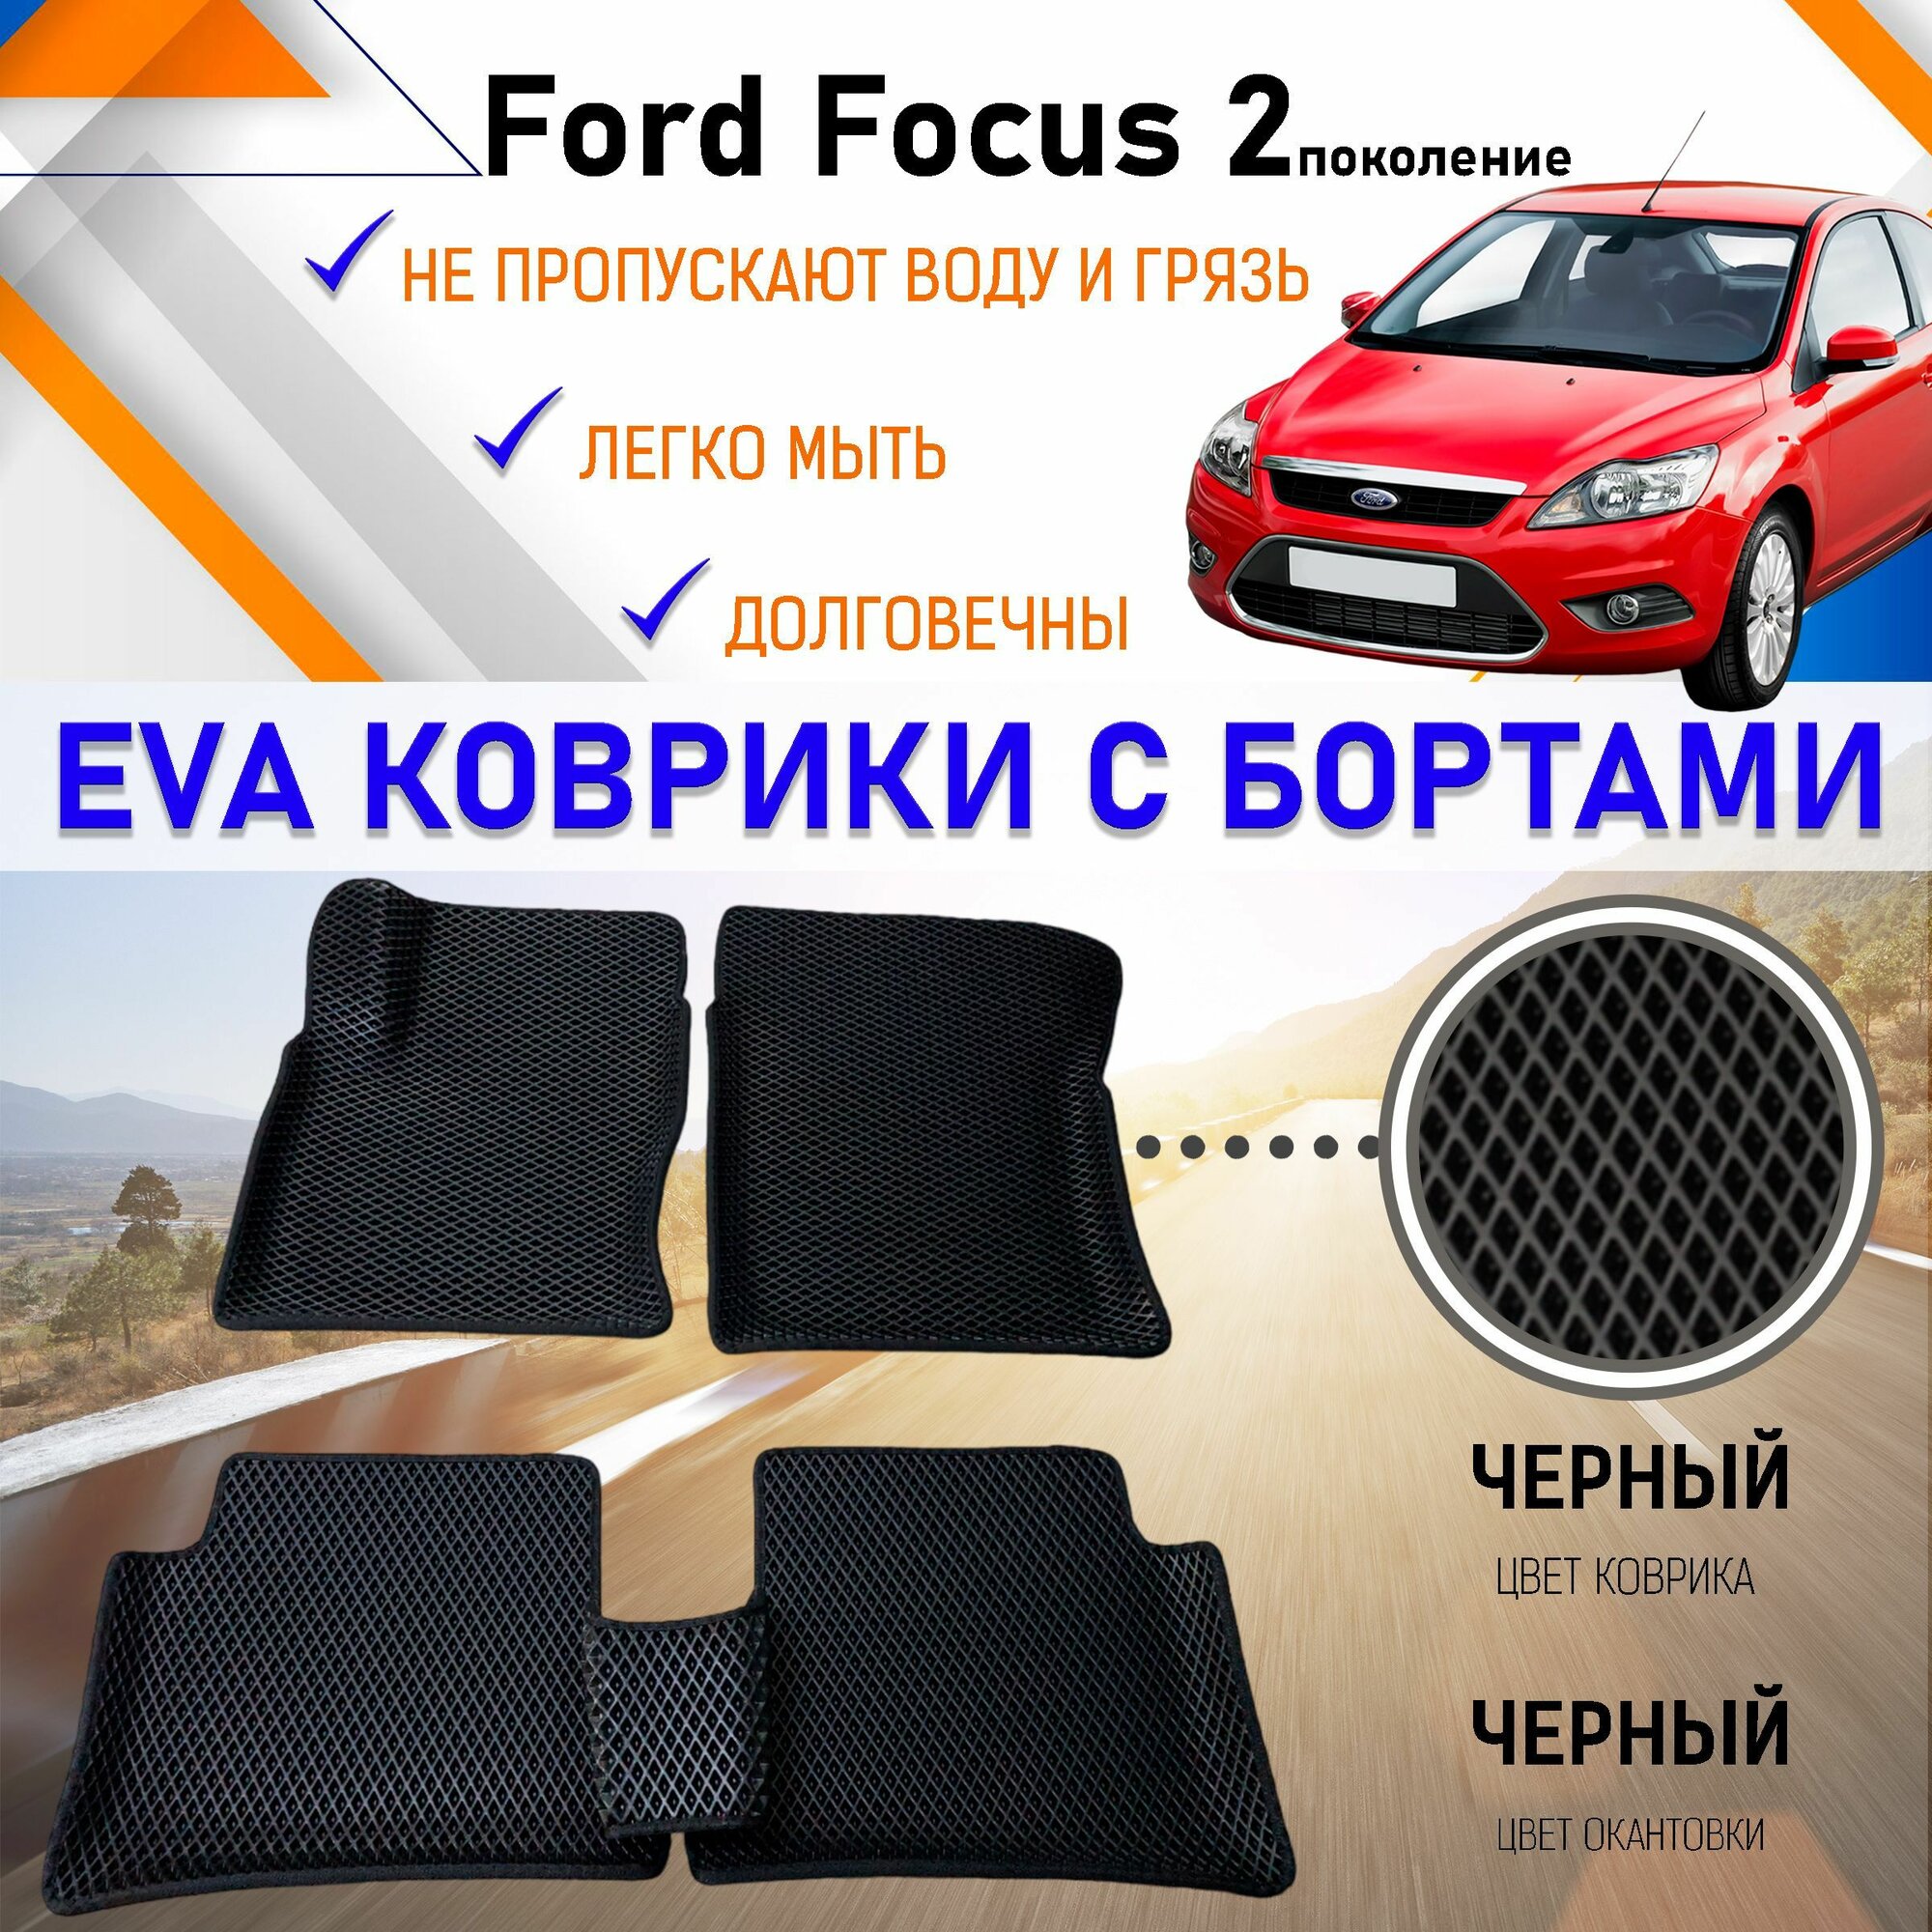 Автомобильные коврики ЕVA, EVO, ЭВО, ЭВА, ЕВА, ЕВО с бортами в салон машины Ford Focus Форд Фокус 2 поколение, резиновый настил для защиты салона авто от грязи и воды